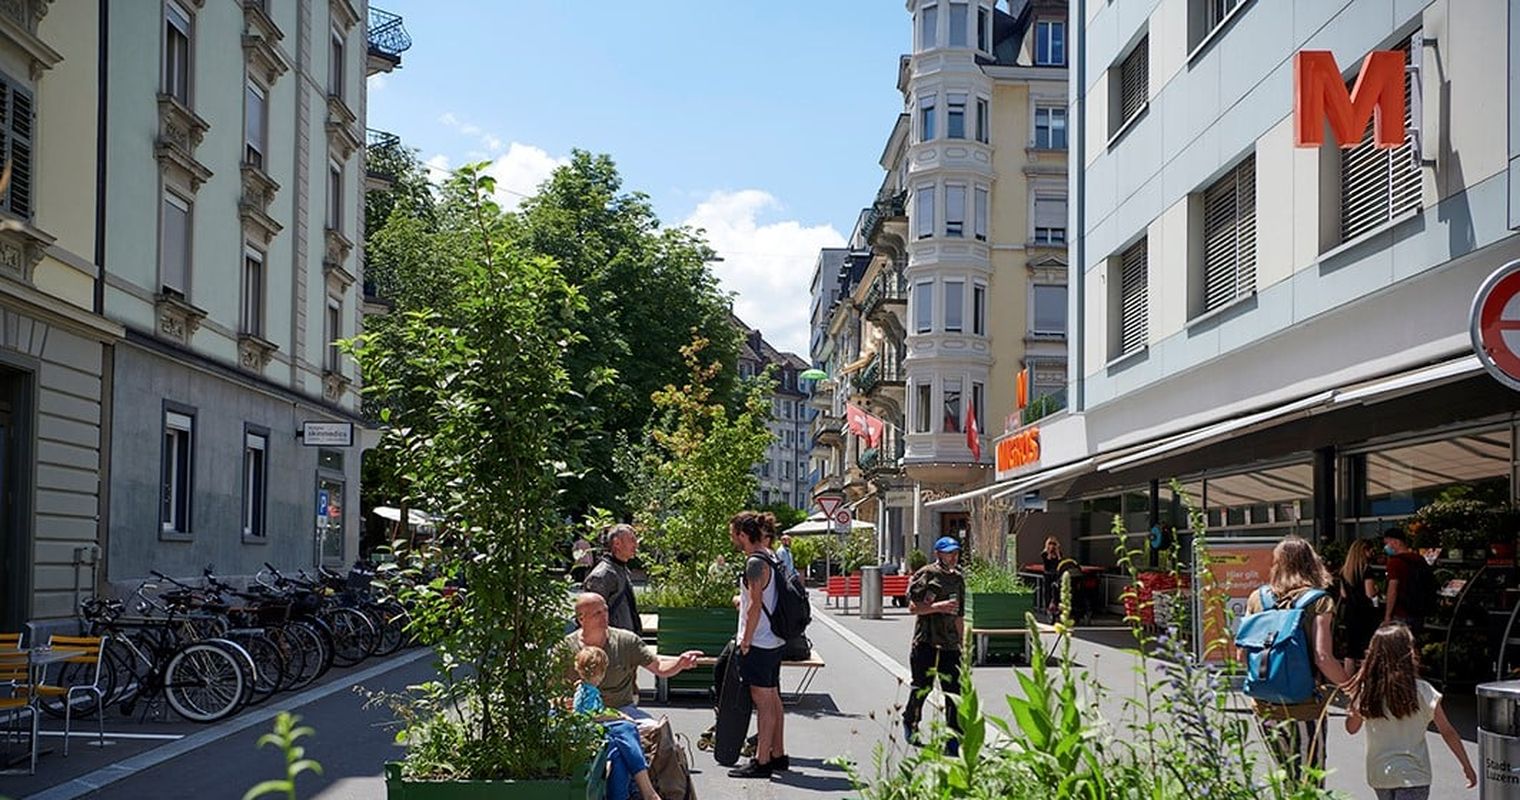 Darum braucht Luzern autofreie Quartiere